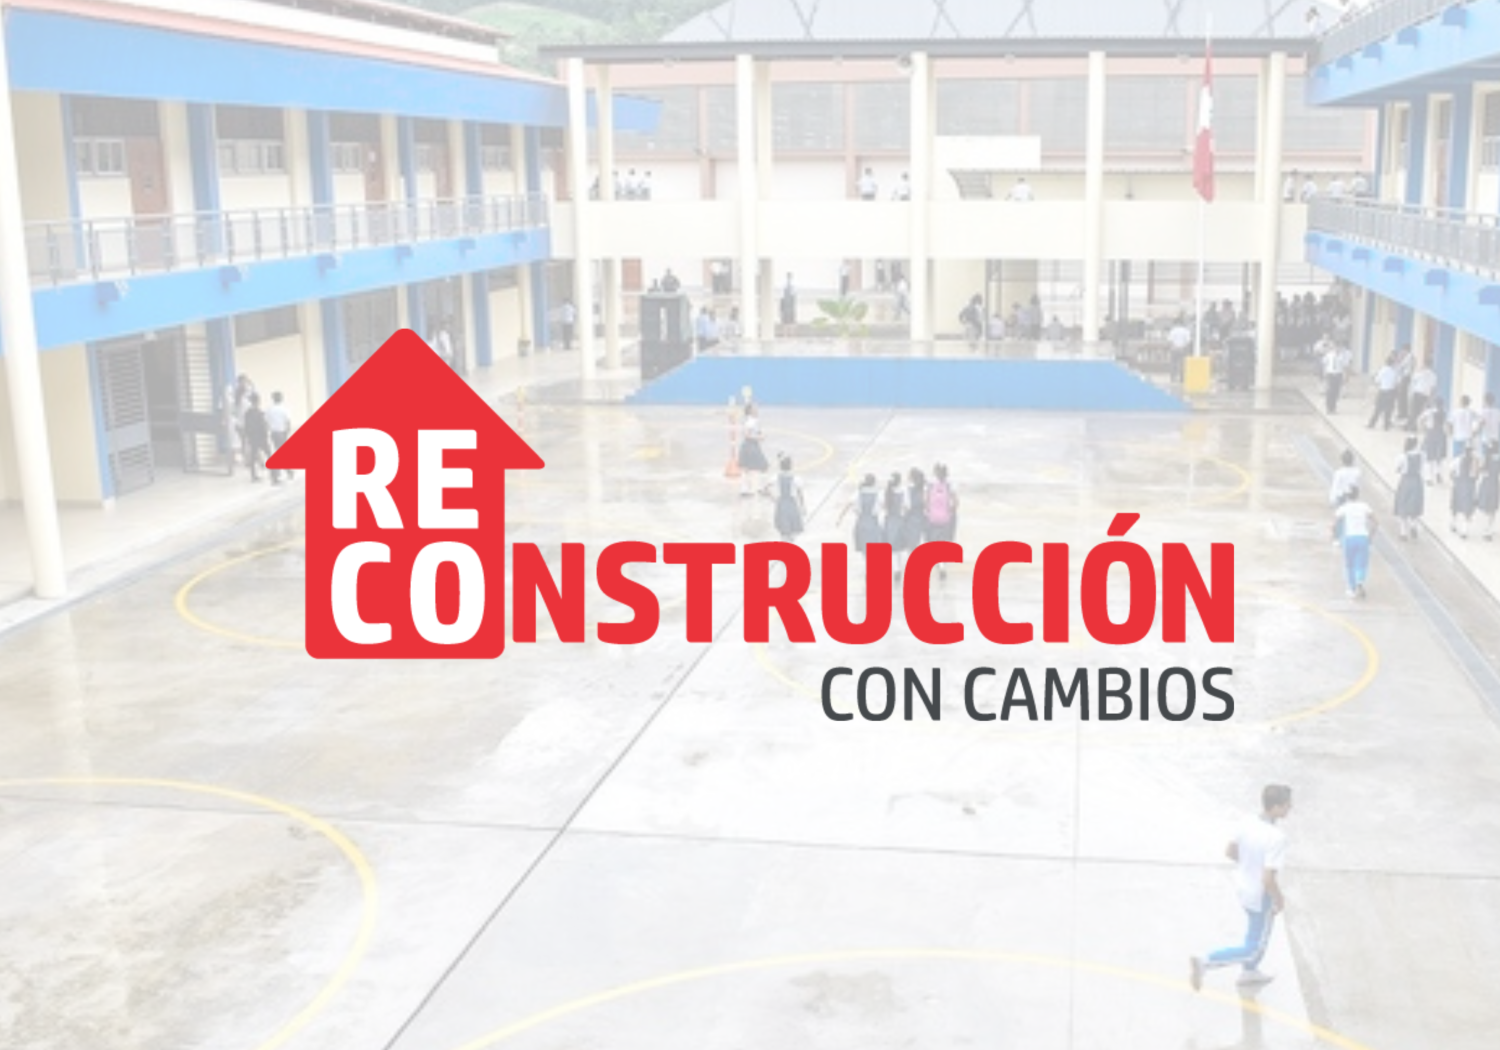 Infraestructura de comunicaciones para colegios del Plan Integral de Reconstrucción con Cambios